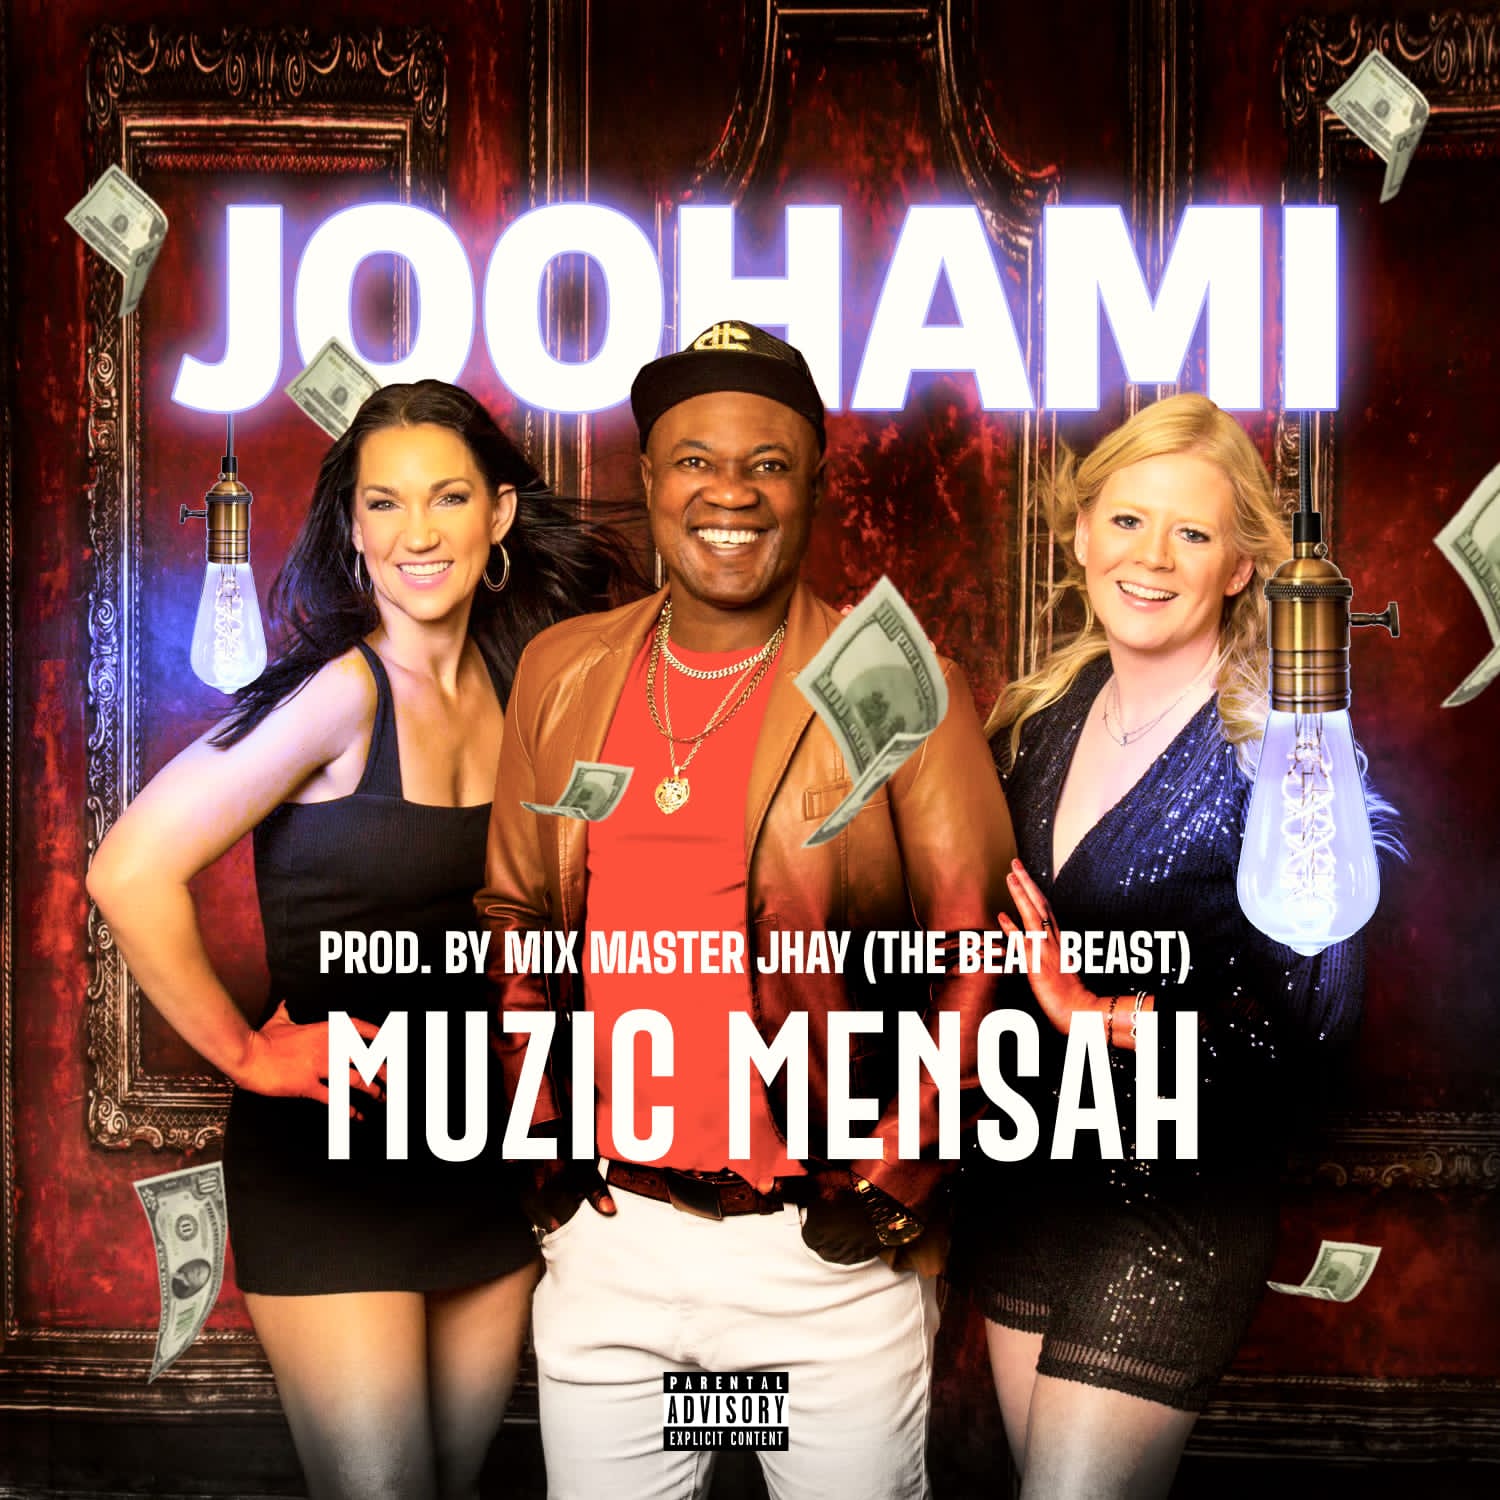 Download MP3: Muzic Mensah – Joo Hami 